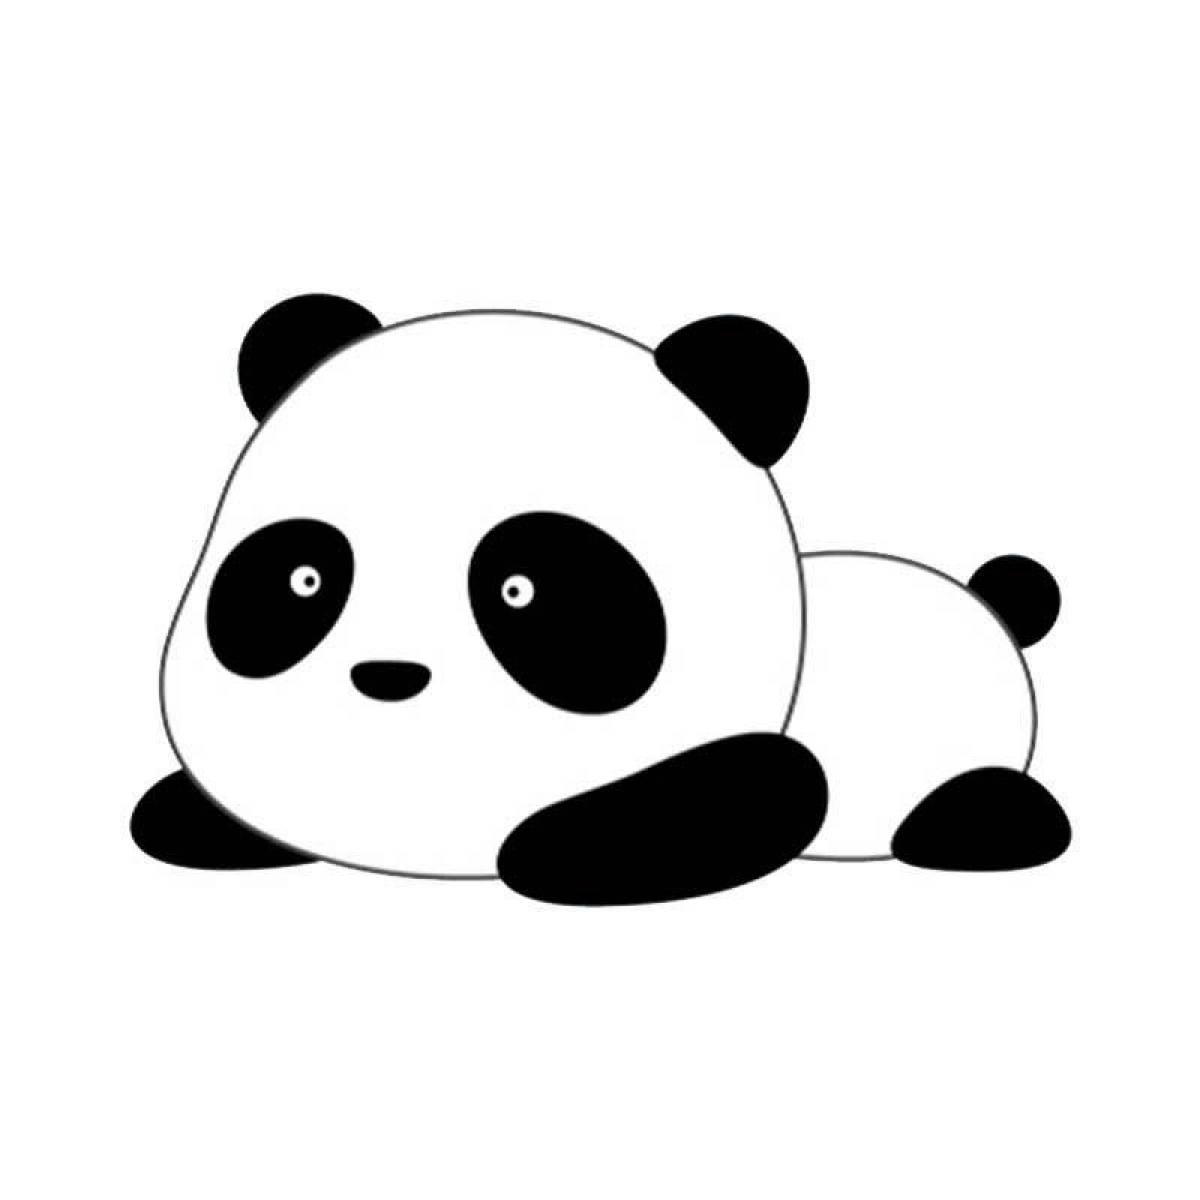 Fun coloring panda